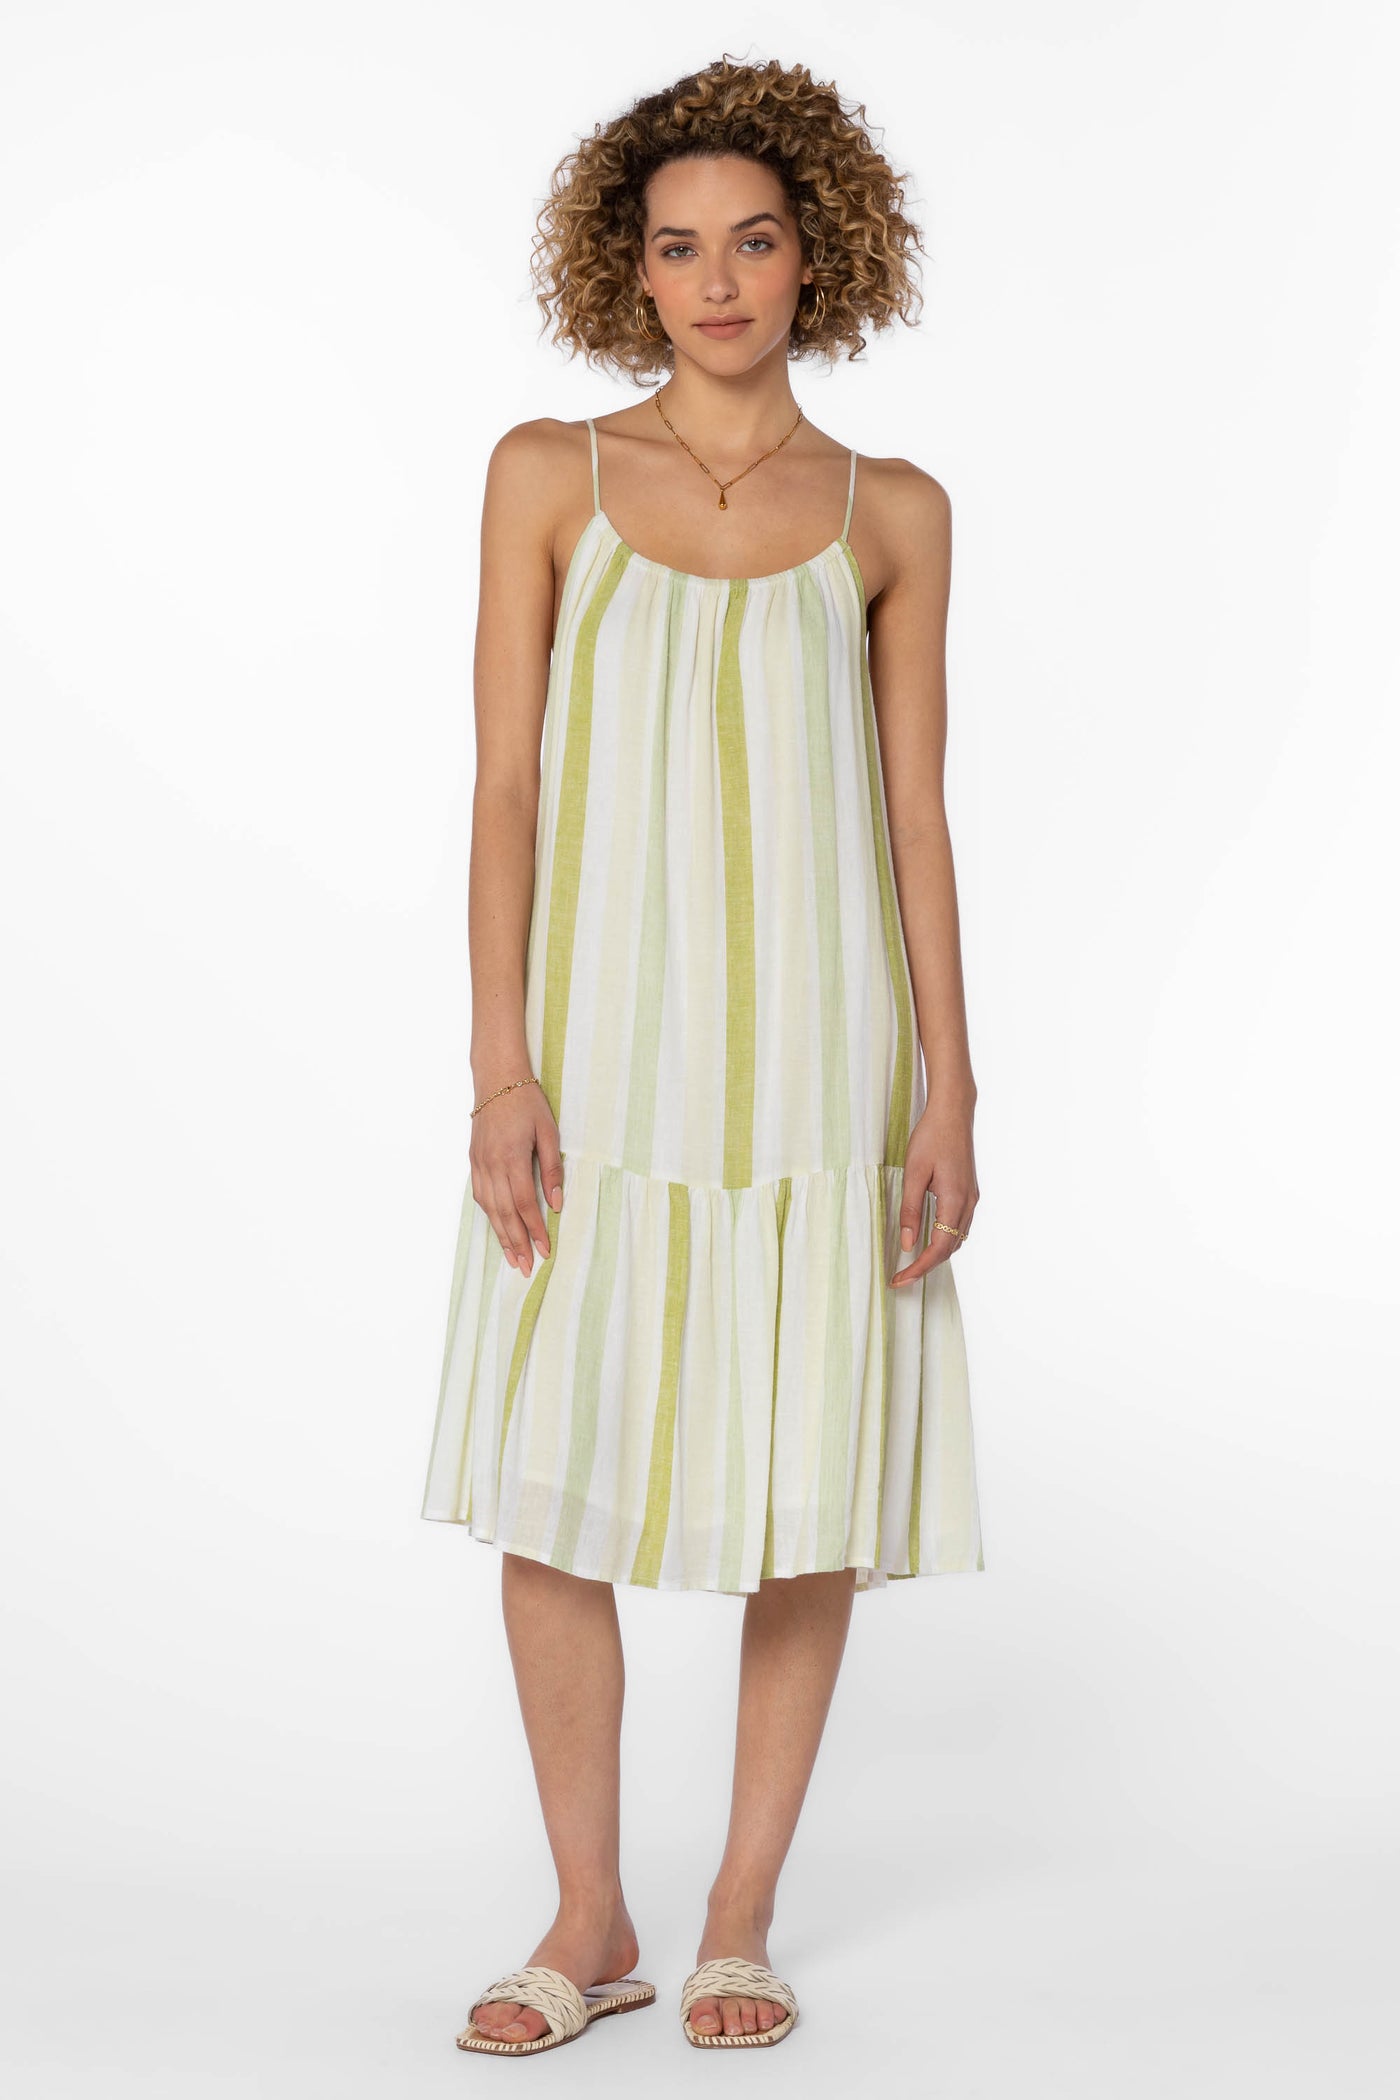 Amelie Green Stripe Dress - Dresses - Velvet Heart Clothing